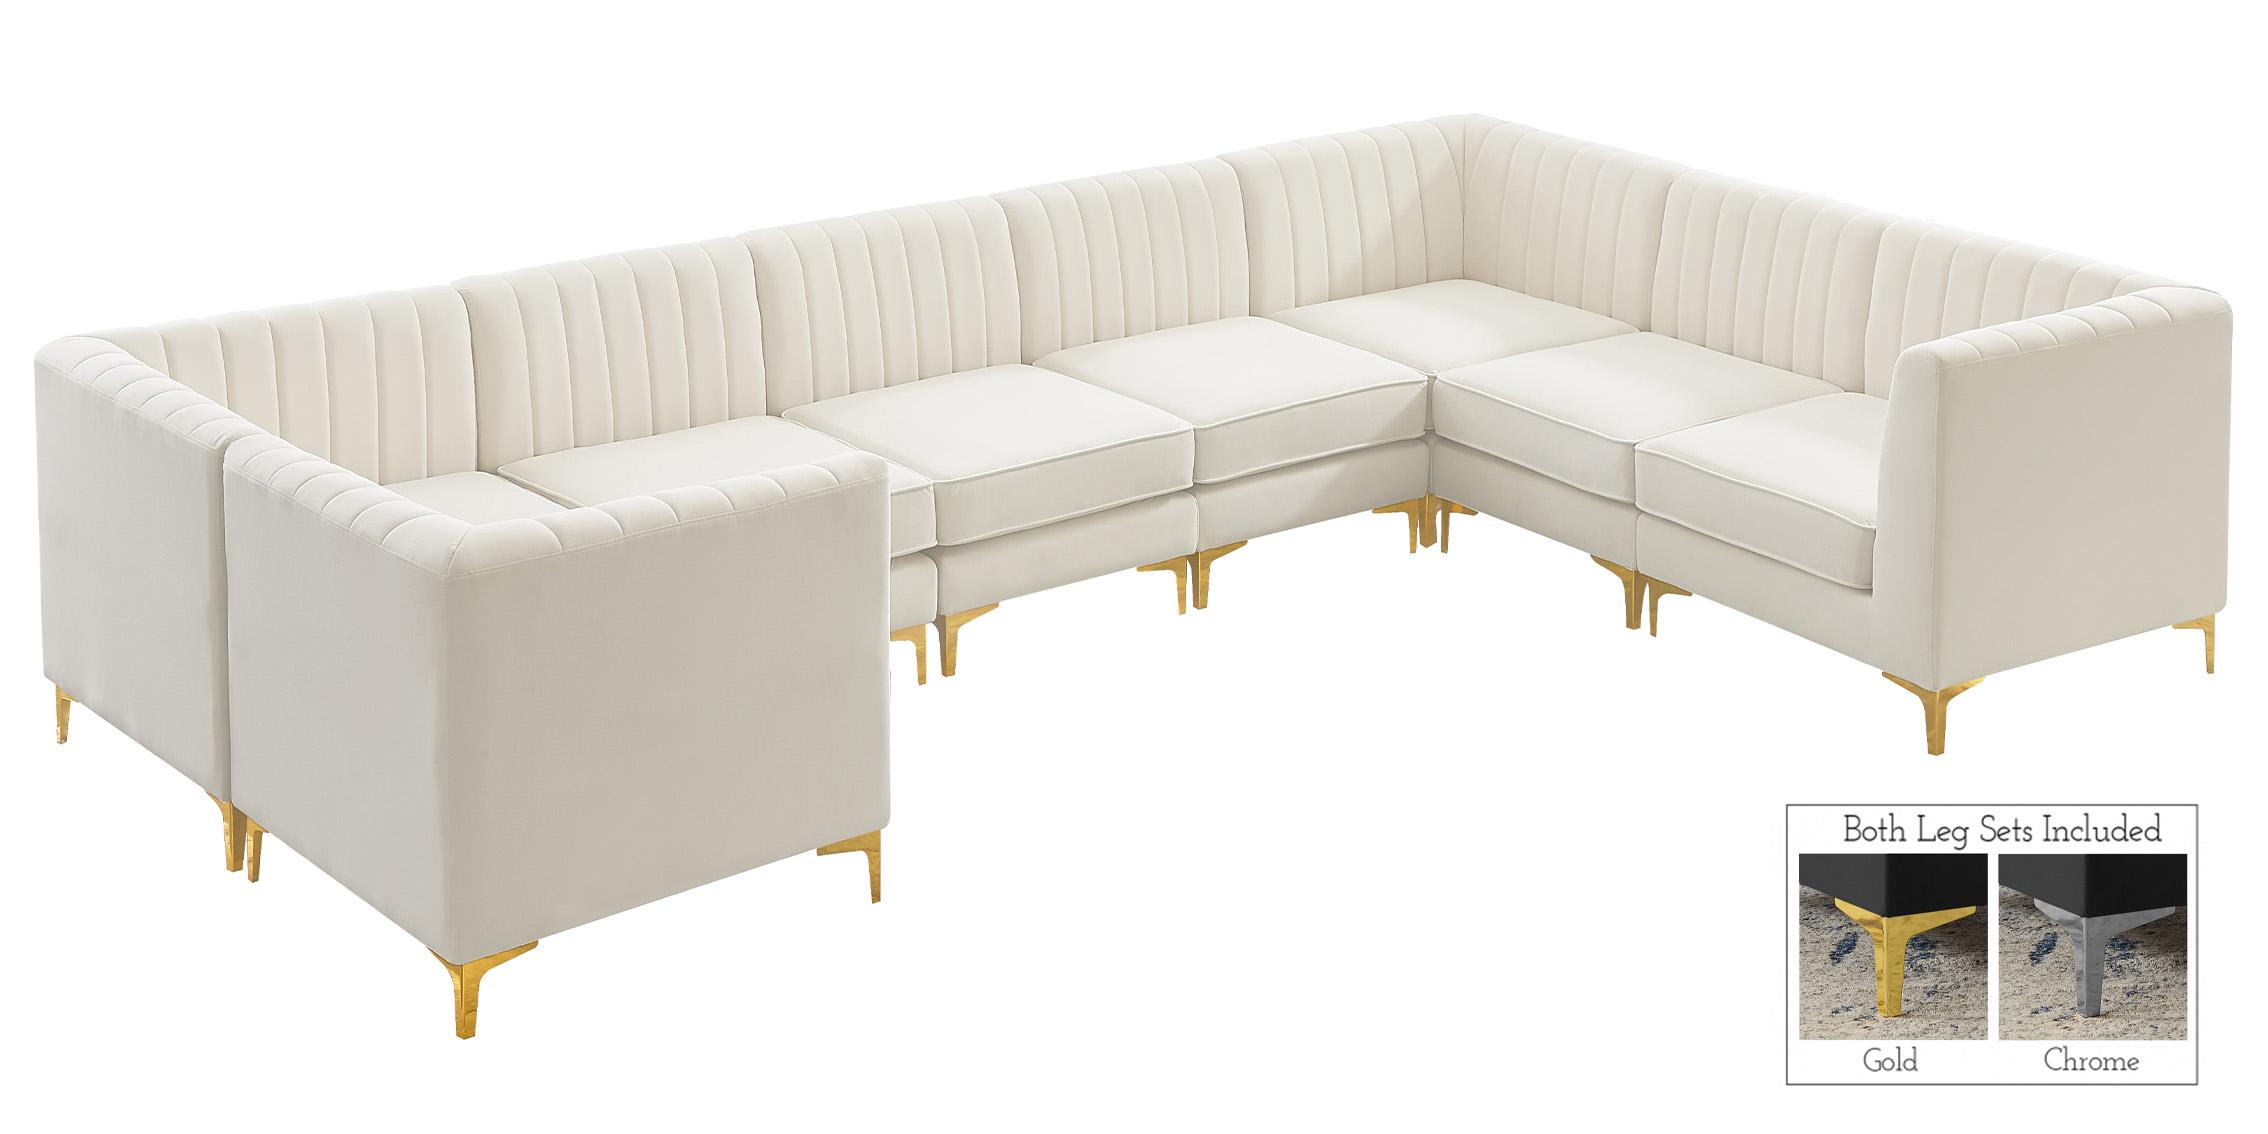 

    
Meridian Furniture ALINA 604Cream-Sec8C Modular Sectional Sofa Cream 604Cream-Sec8C
